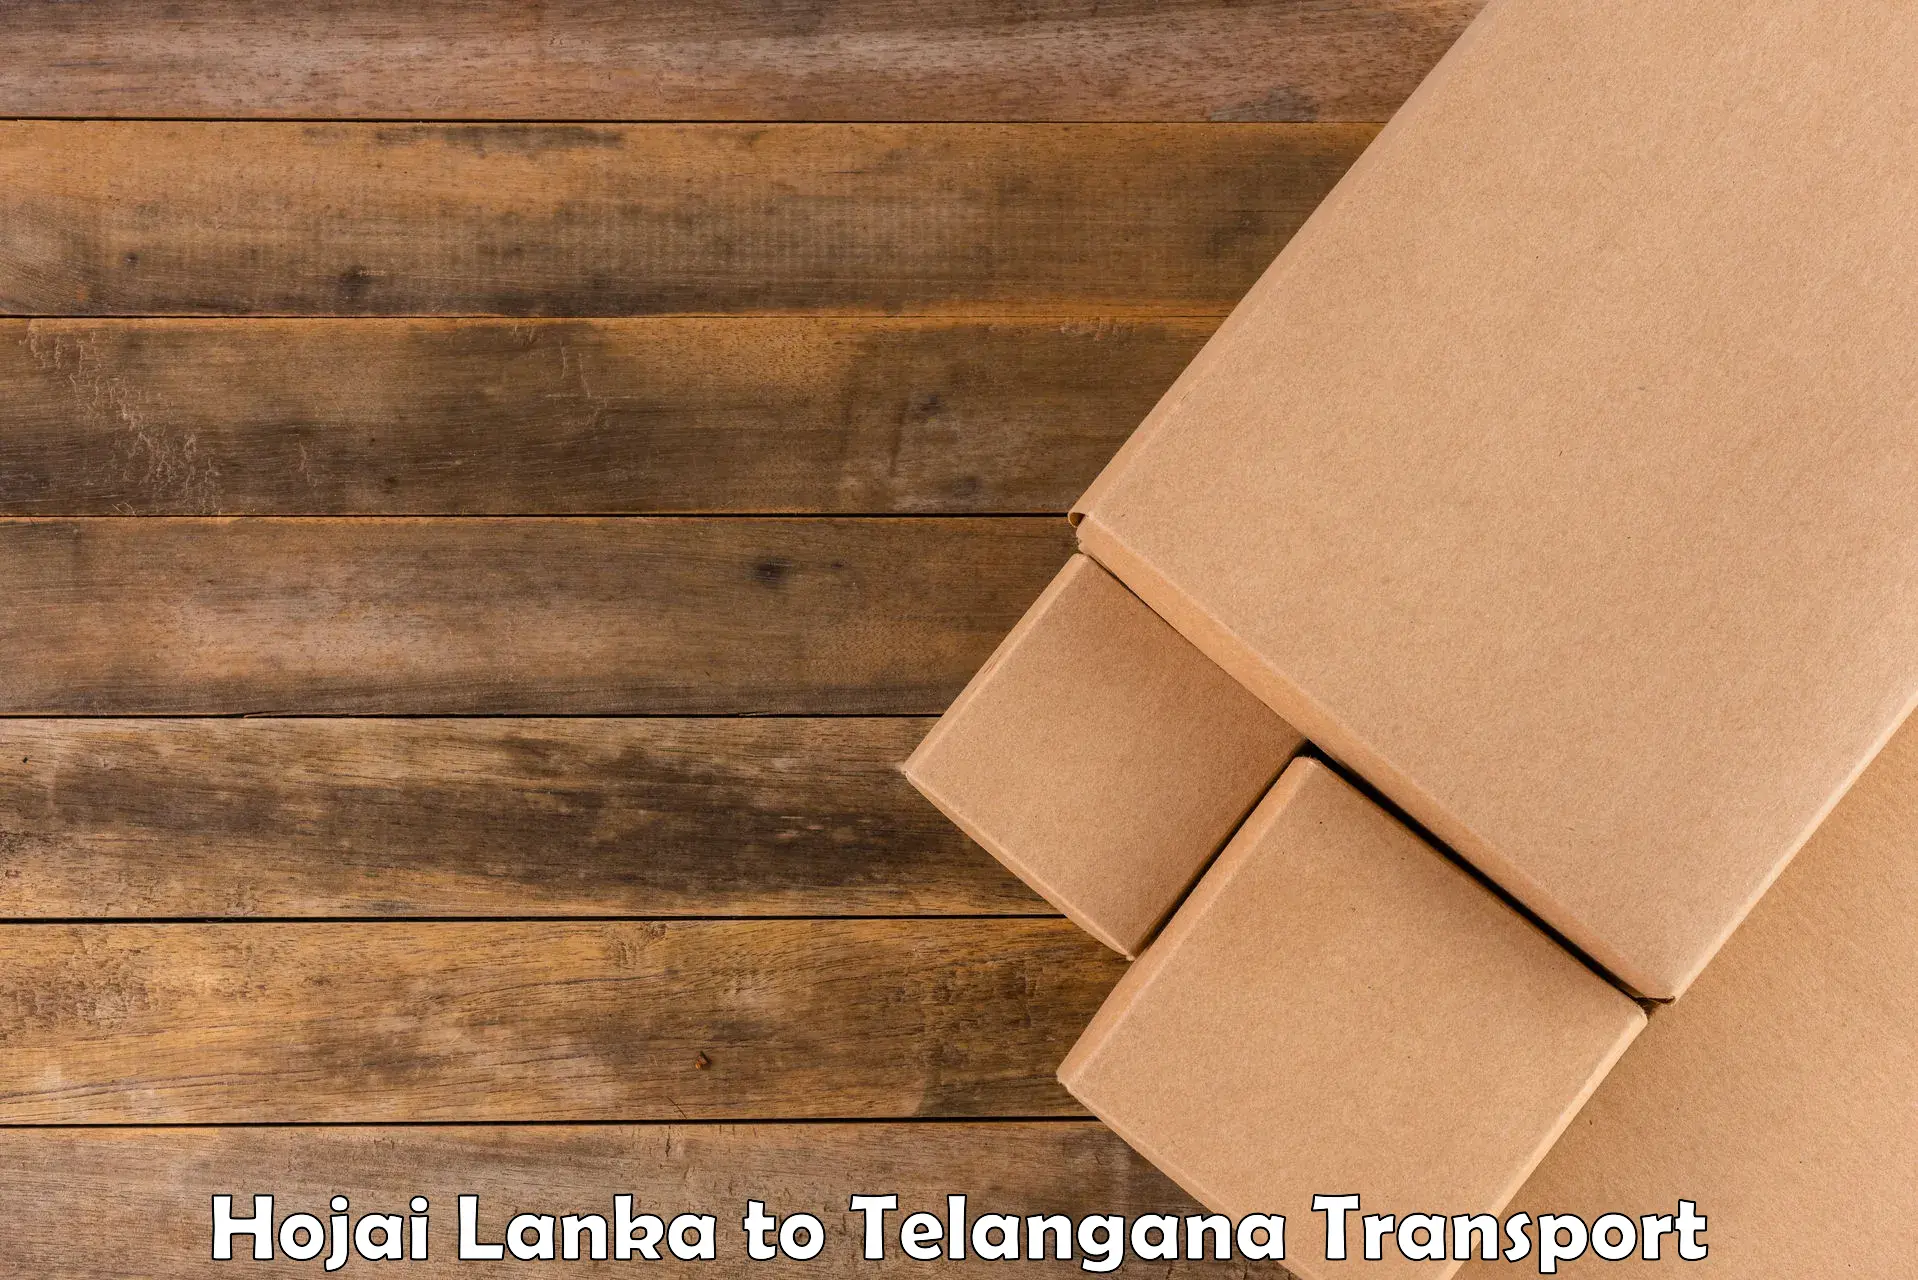 Transport in sharing Hojai Lanka to Aswaraopeta